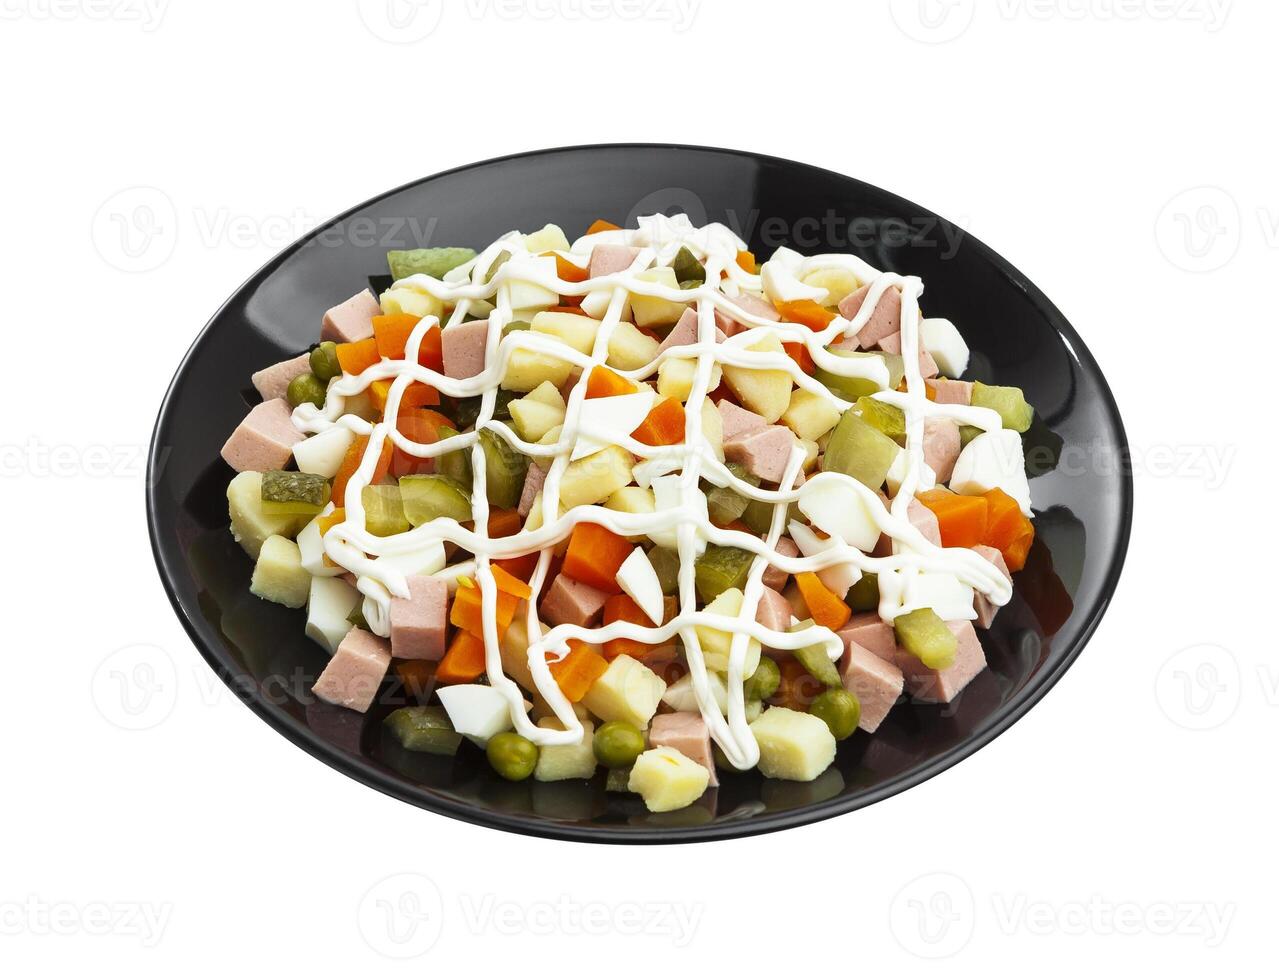 traditionell Russisch Salat Olivier isoliert auf Weiß Hintergrund mit Ausschnitt Pfad foto